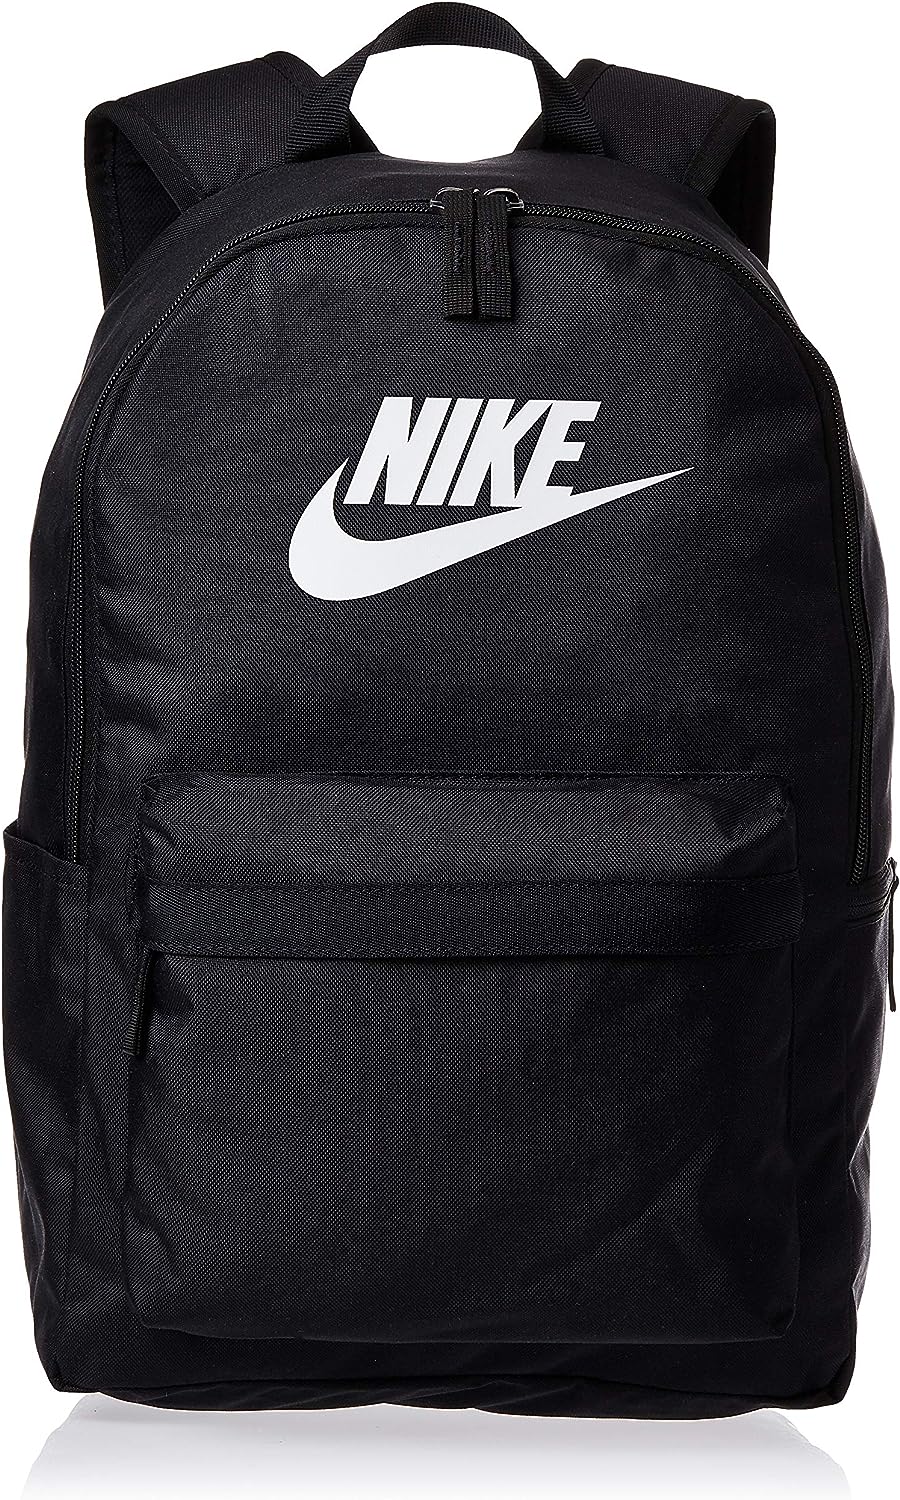 Nike heritage black backpack